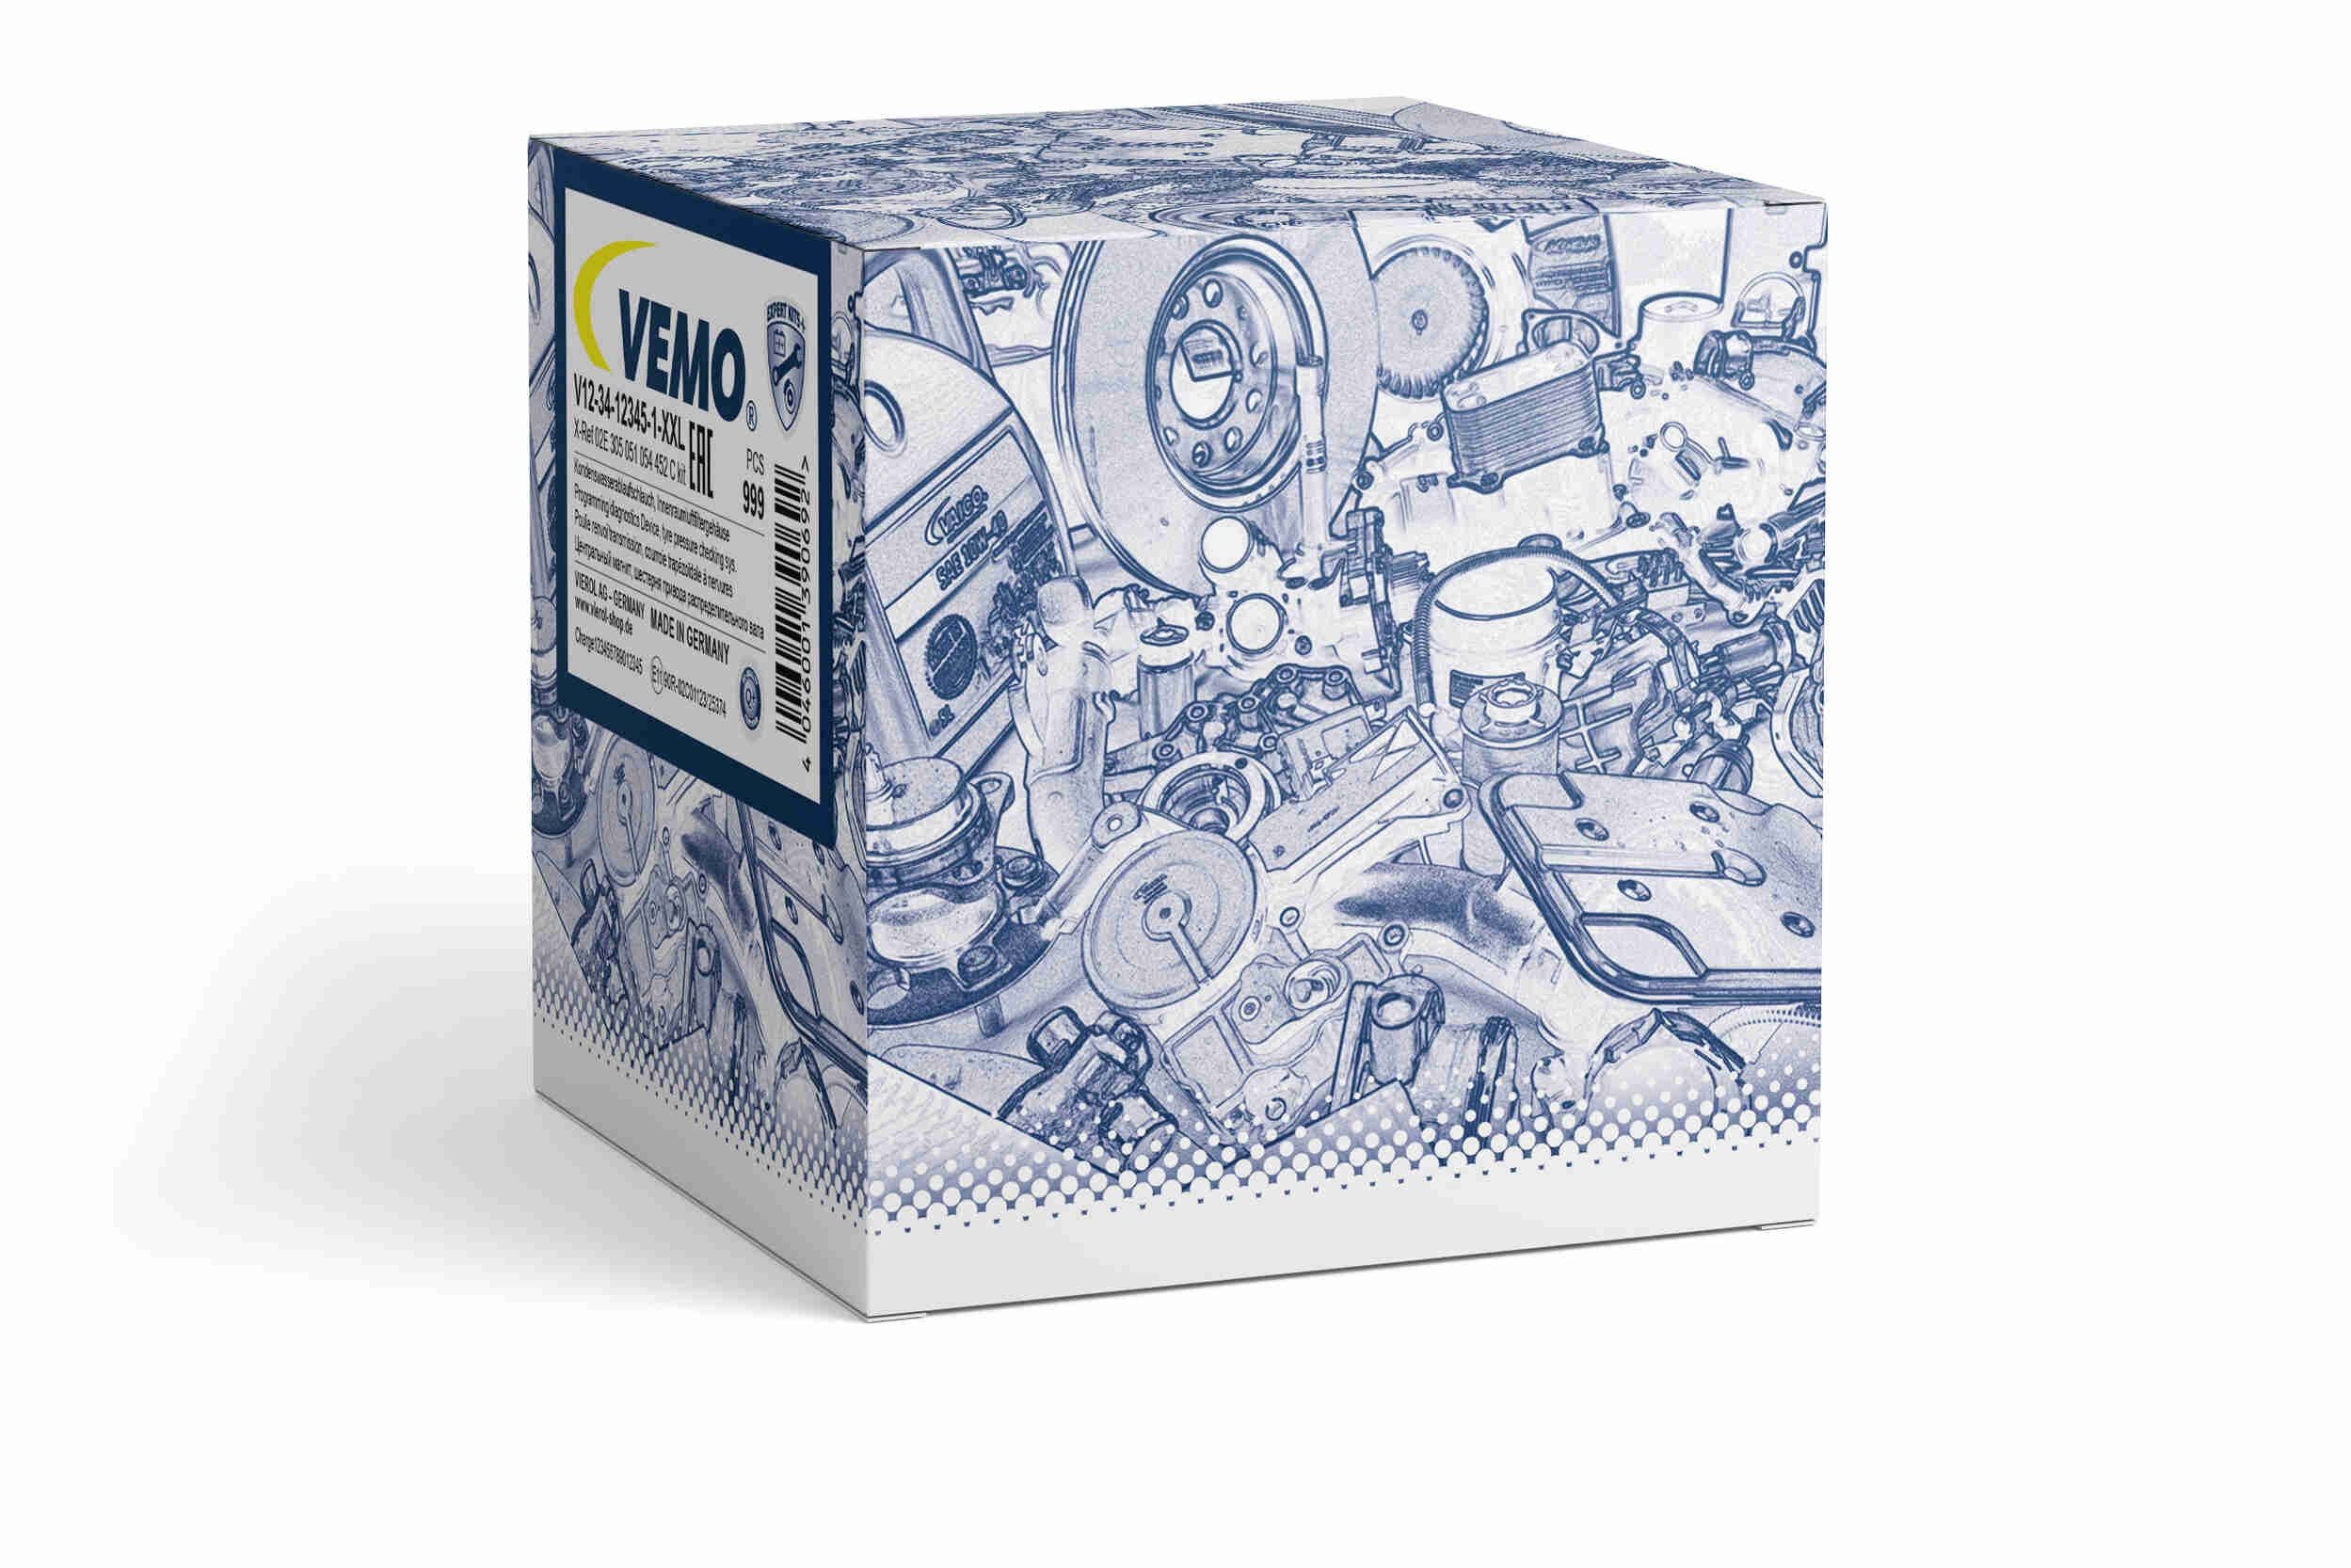 VEMO V10-63-0051 Valve, EGR exhaust control Q+, original equipment manufacturer quality